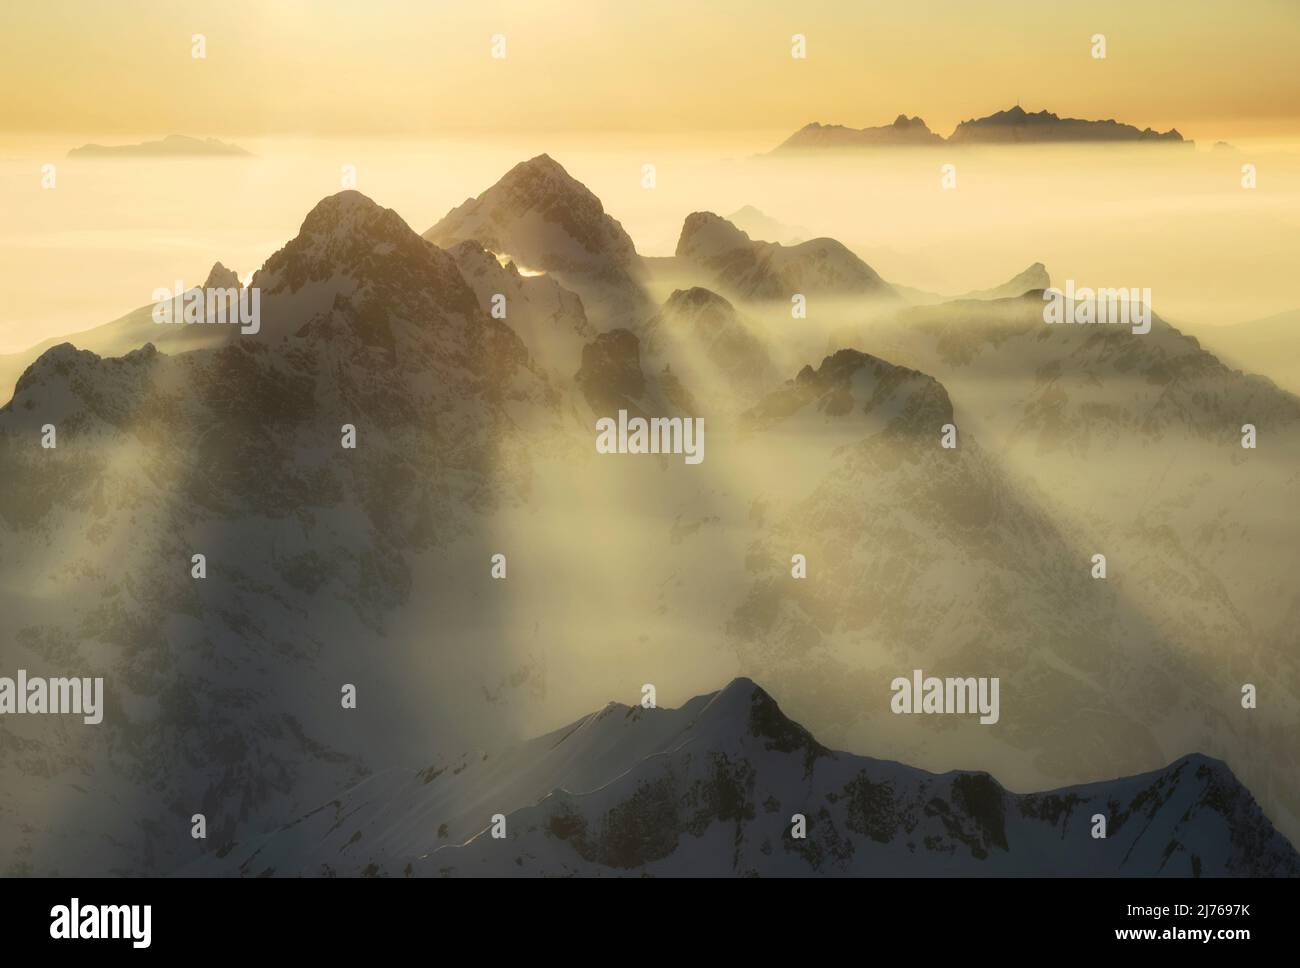 Tramonto d'atmosfera: Montagne e foschia sono illuminate da una calda luce del sole. Hochkünzelspitze e Zitterklapfen nei monti Lechquellen. Sullo sfondo Alpstein con Säntis. Vorarlberg, Austria, Svizzera, Europa Foto Stock